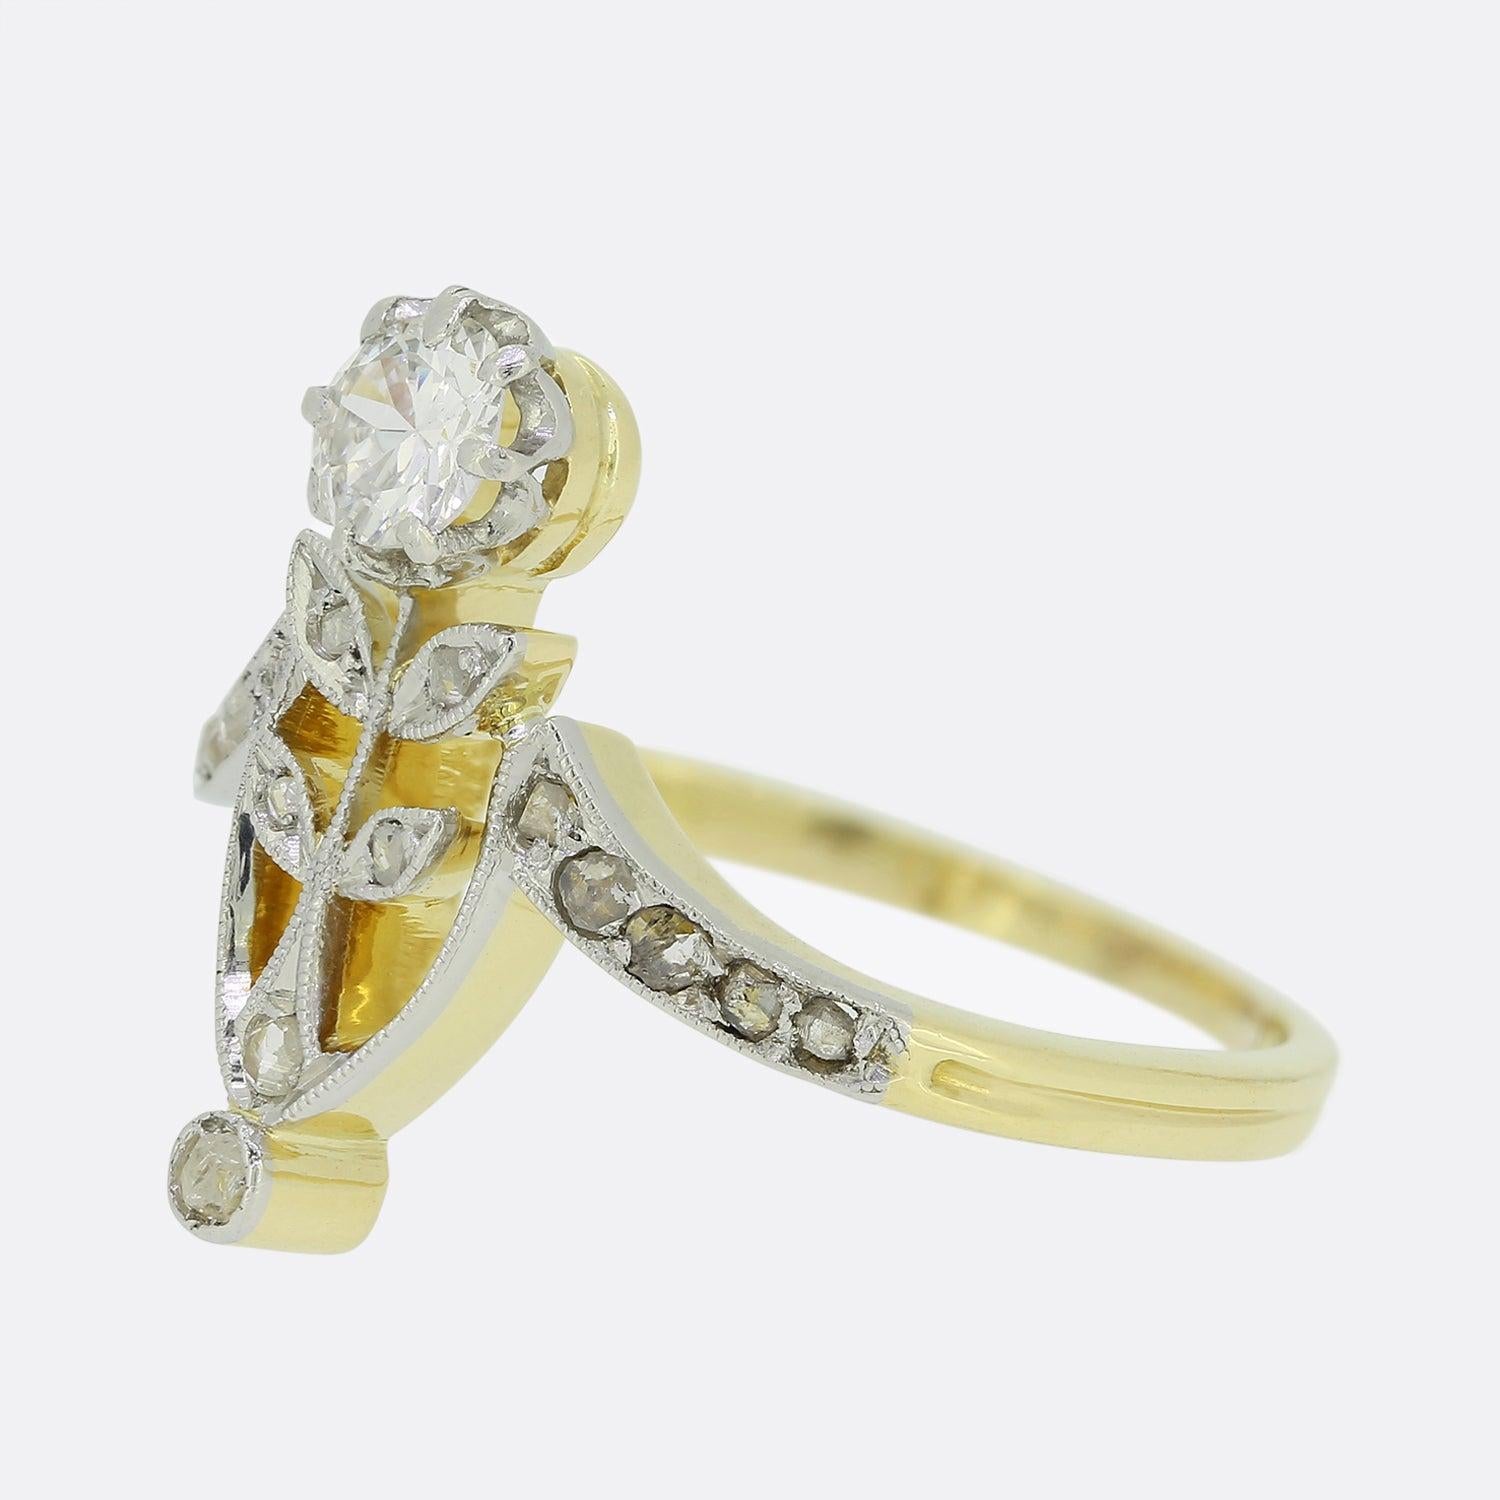 Hier haben wir einen eleganten Diamantring aus 18 Karat Gelbgold. Dieses edwardianische Stück wurde in Form einer Blume gefertigt, deren Kopf ein Diamant im Brillantschliff von 0,25 Karat bildet. Die Blütenblätter und der Stiel des Rings sind mit